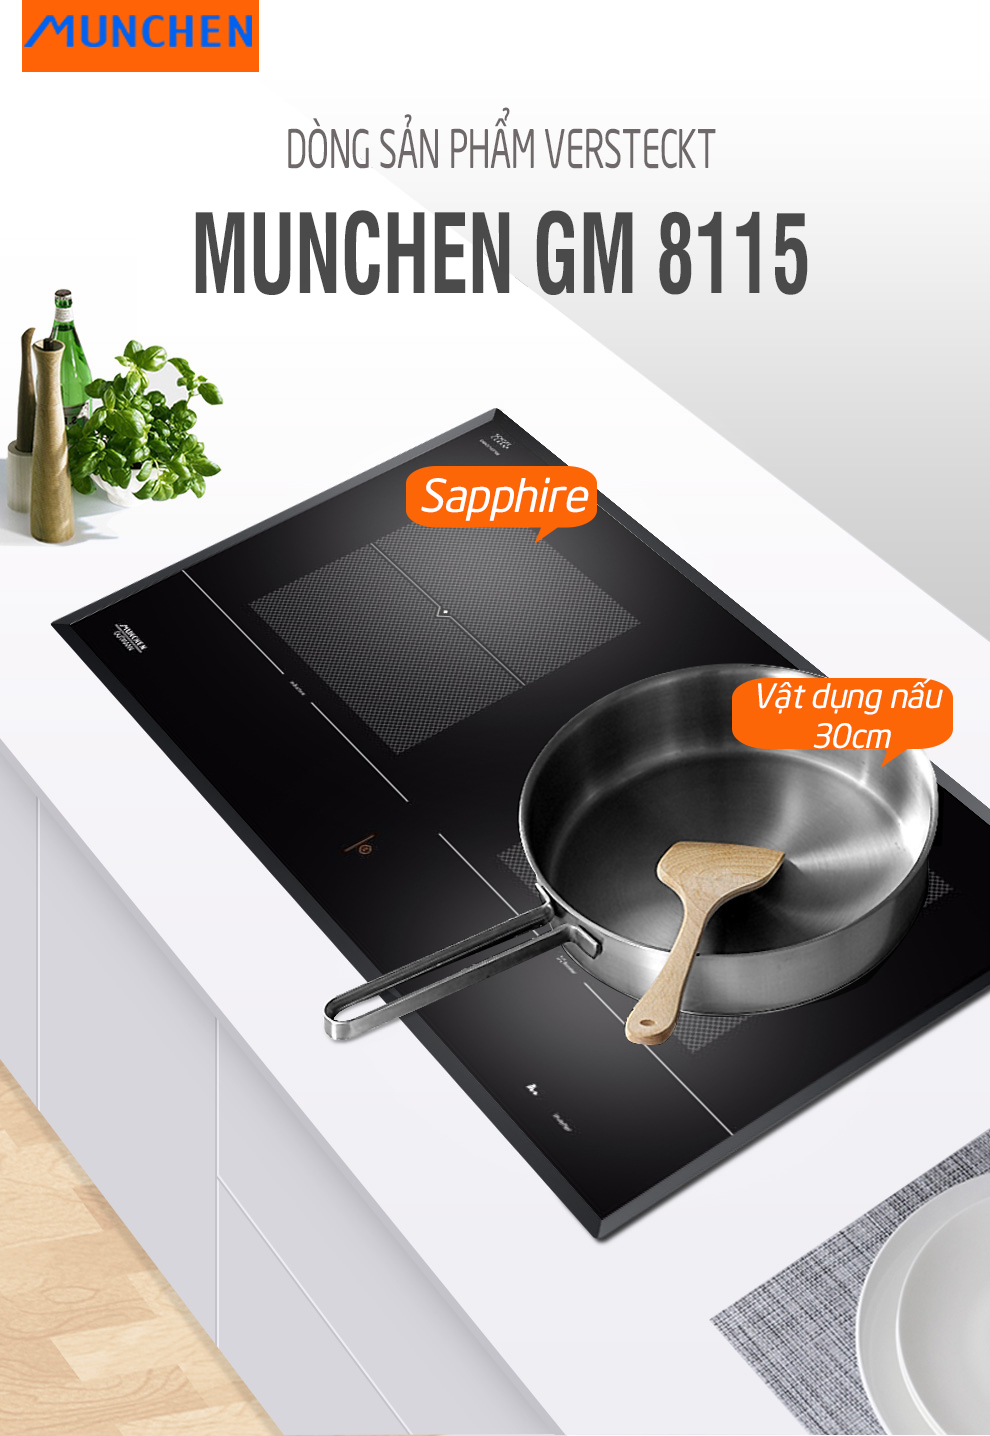 Sử dụng bếp từ Munchen GM 8115 như thế nào là đúng cách?